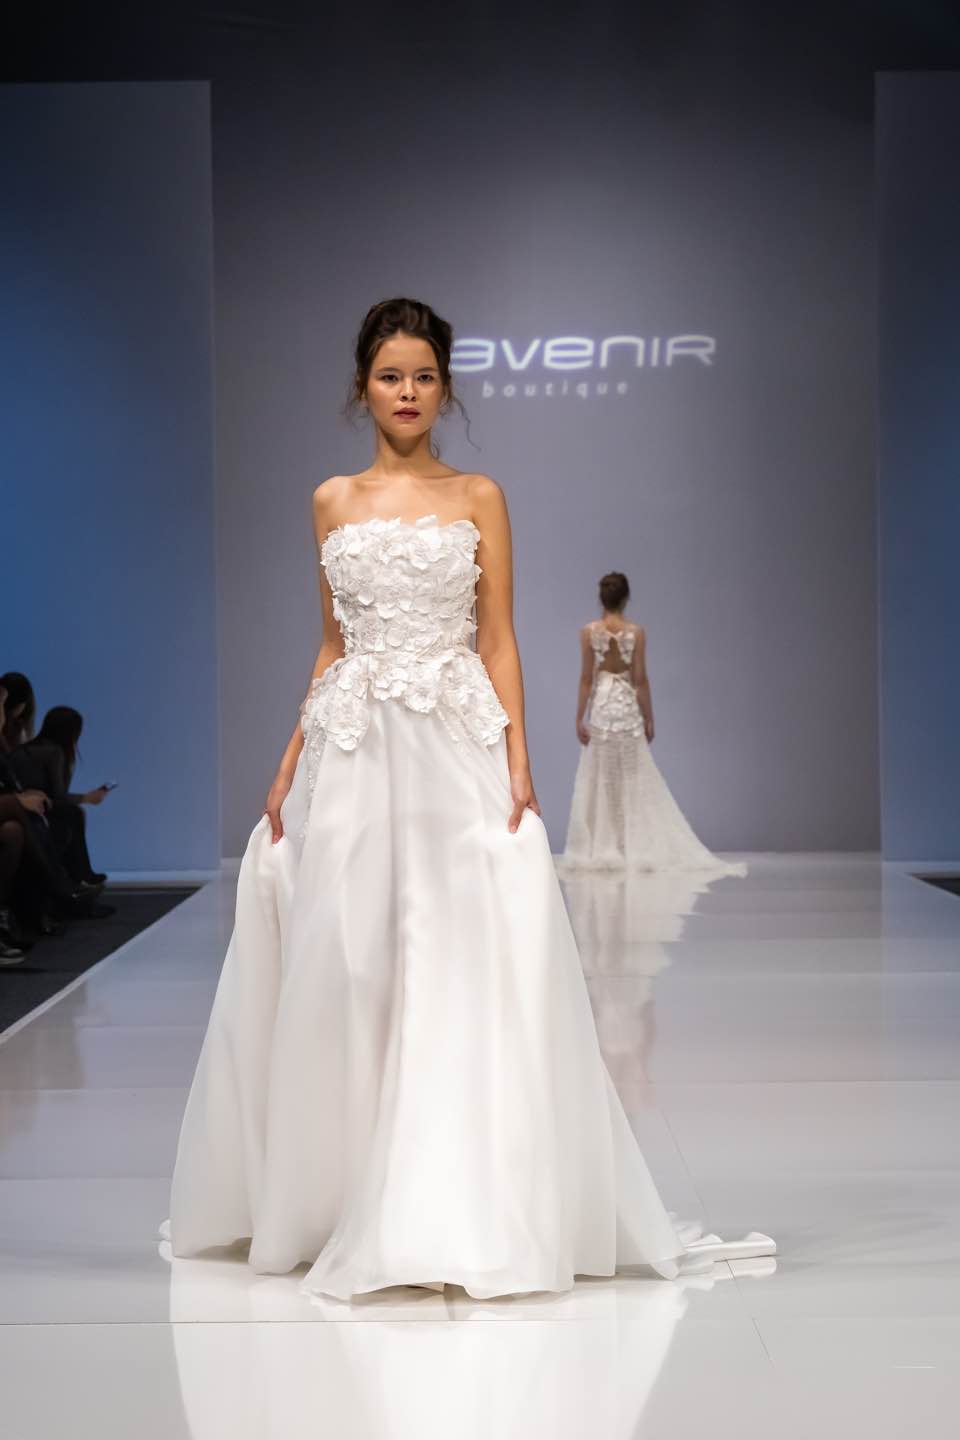 Свадебное платье L'Avenir Boutique